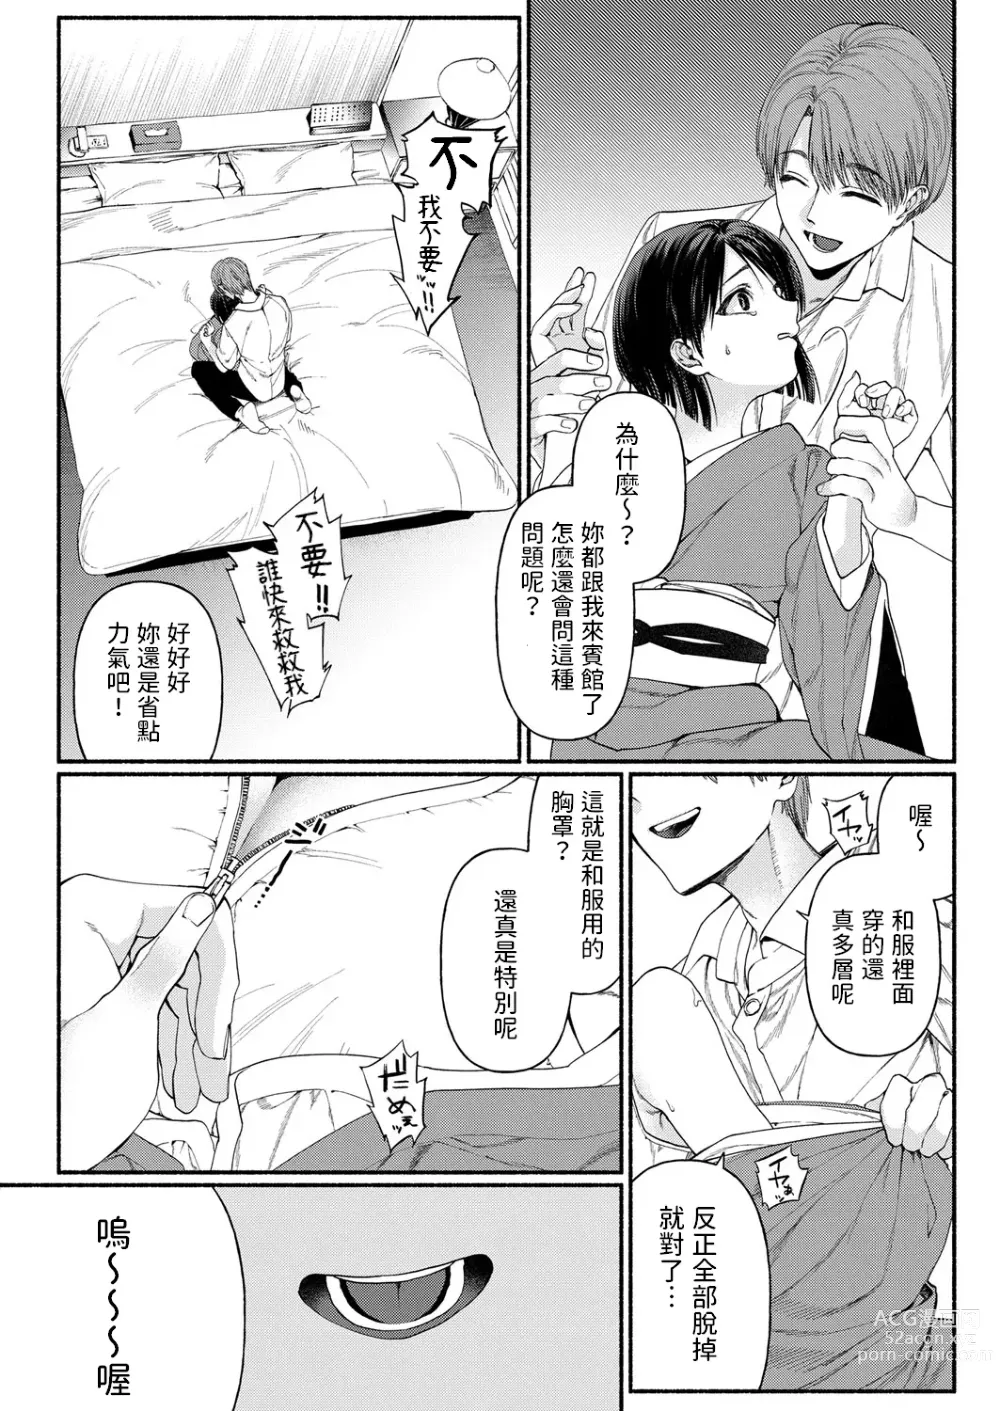 Page 12 of manga Hakoiri Musume wa Pet ni Ochiru -Zenpen-